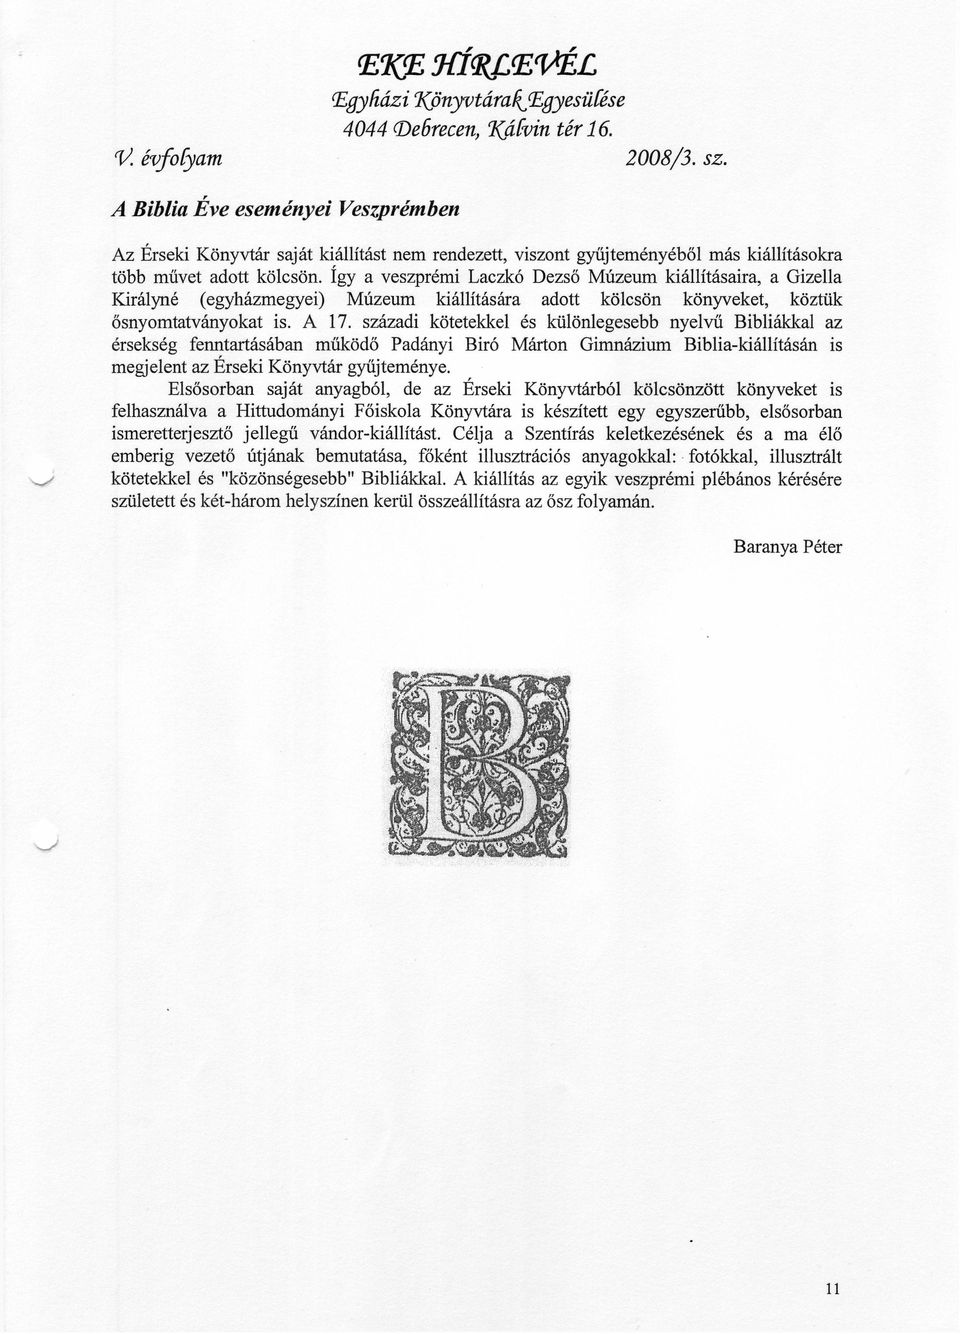 így a veszprémi Laczkó Dezső Múzeum kiállításaira, a Gizella Királyné (egyházmegyei) Múzeum kiállítására adott kölcsön könyveket, köztük ősnyomtatványokat is. A 17.